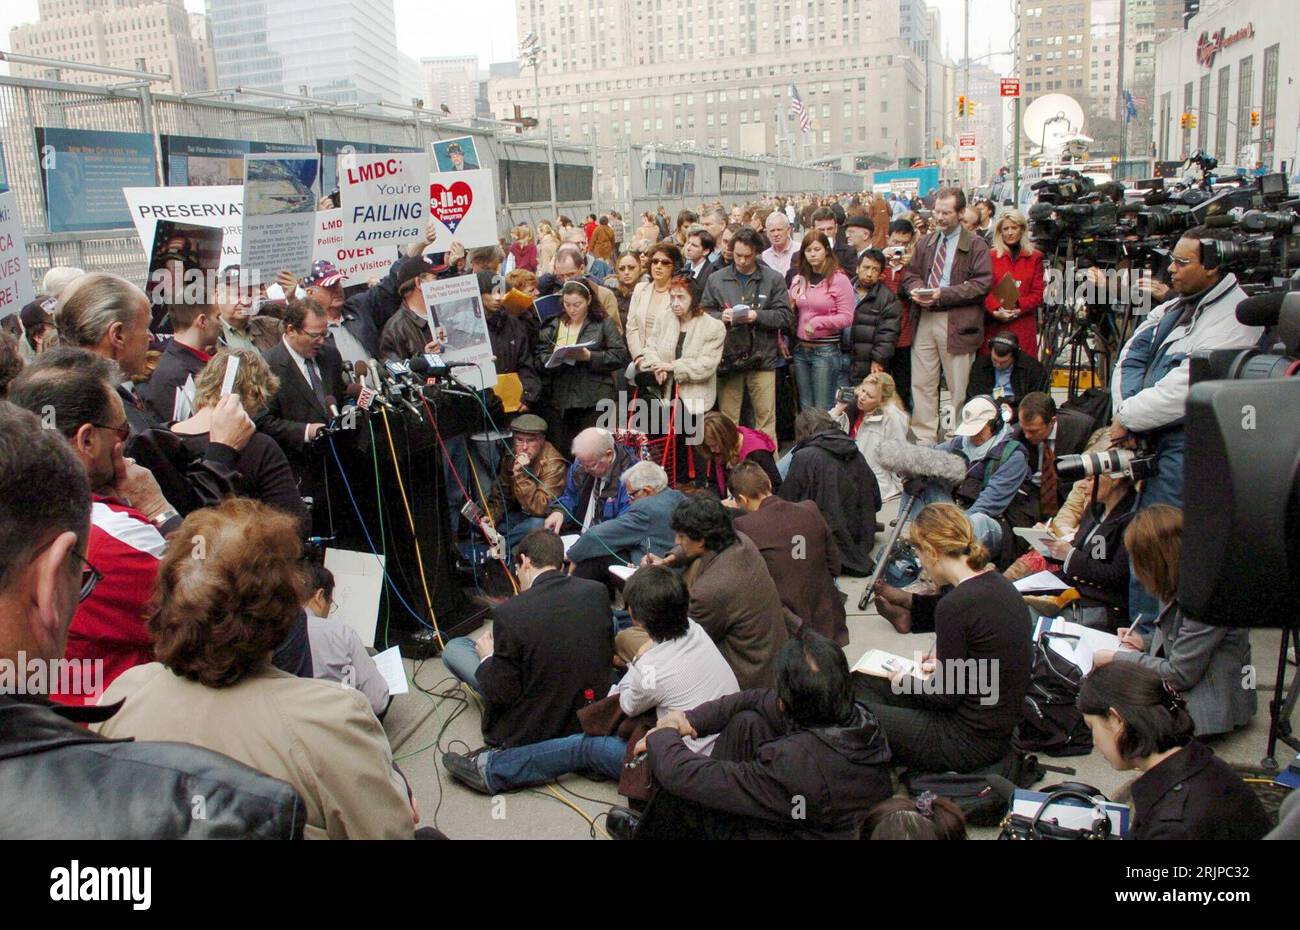 Bildnummer: 51149643 Datum: 13.03.2006 Copyright: imago/Xinhua Angehörige der Opfer der Anschläge vom 11. September protestieren gegen die Art der Umsetzung der Gedenkstätte - Reflecting Absence - während einer Pressekonferenz am Ground Zero in New York - PUBLICATIONxNOTxINxCHN, Personen; 2006, New York, NY, N.Y. , , , Gedenkstätten, WTC, World Trade Center, Pressekonferenz, Angehörige, Angehöriger, Familie, Familienmitglieder, Opfer, Kritik, Demo, Demos, Demonstration, Demonstrationen, Protest, Proteste, Protestaktionen, Protestaktion, , Pressetermin, Demonstrant, Demonstranten, Presse, Jo Stockfoto